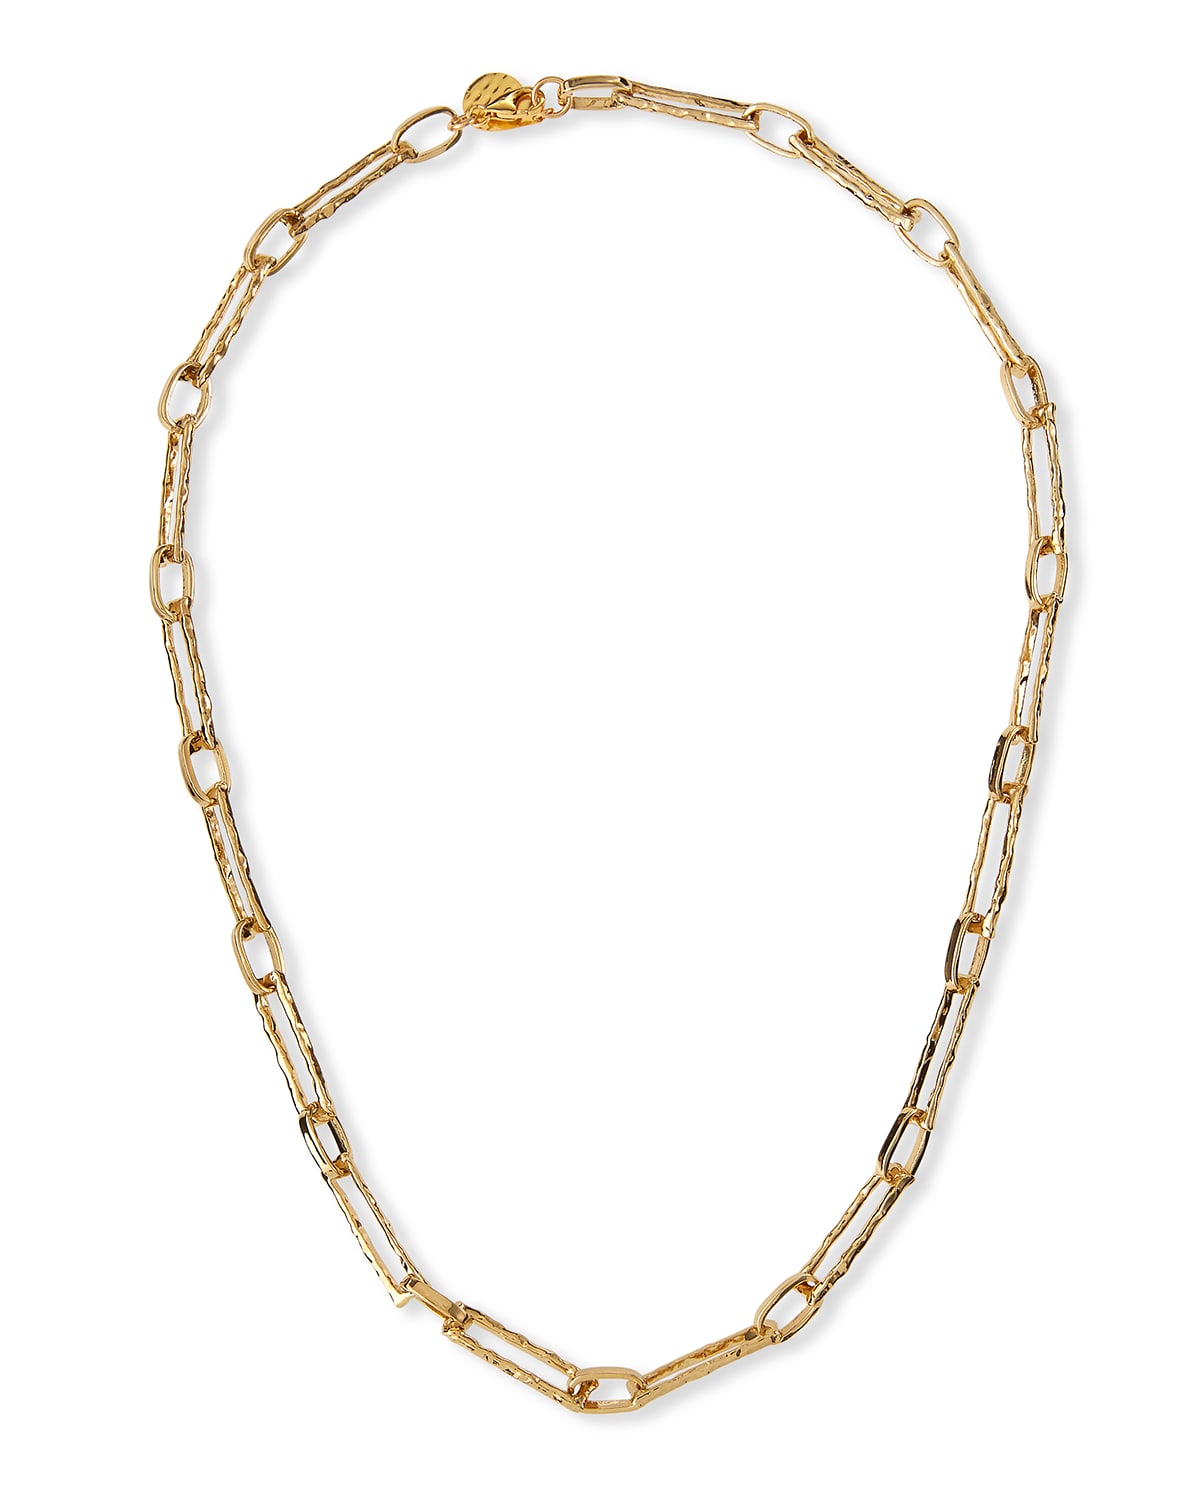 Devon Leigh Textured 24k Gold-plate Chain Necklace